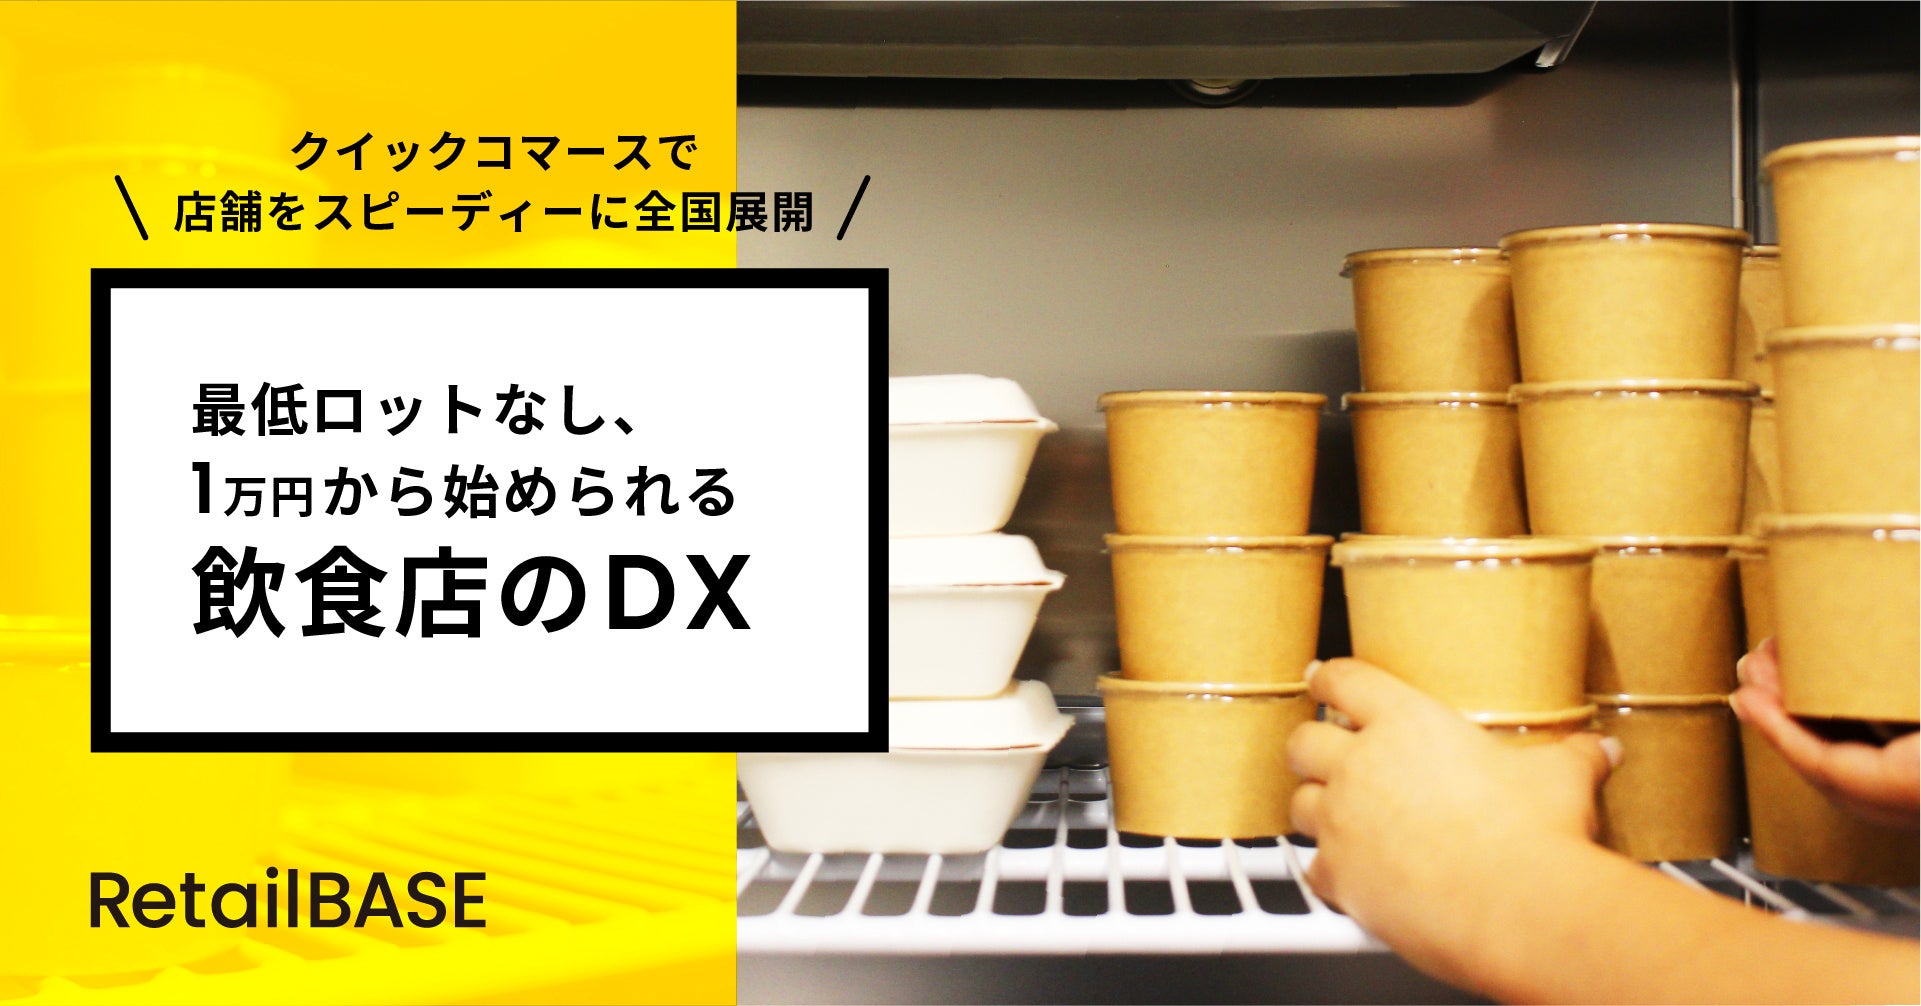 クイックコマースで店舗をスピーディーに全国展開　最低ロットなし、1万円から始められる飲食店のDX